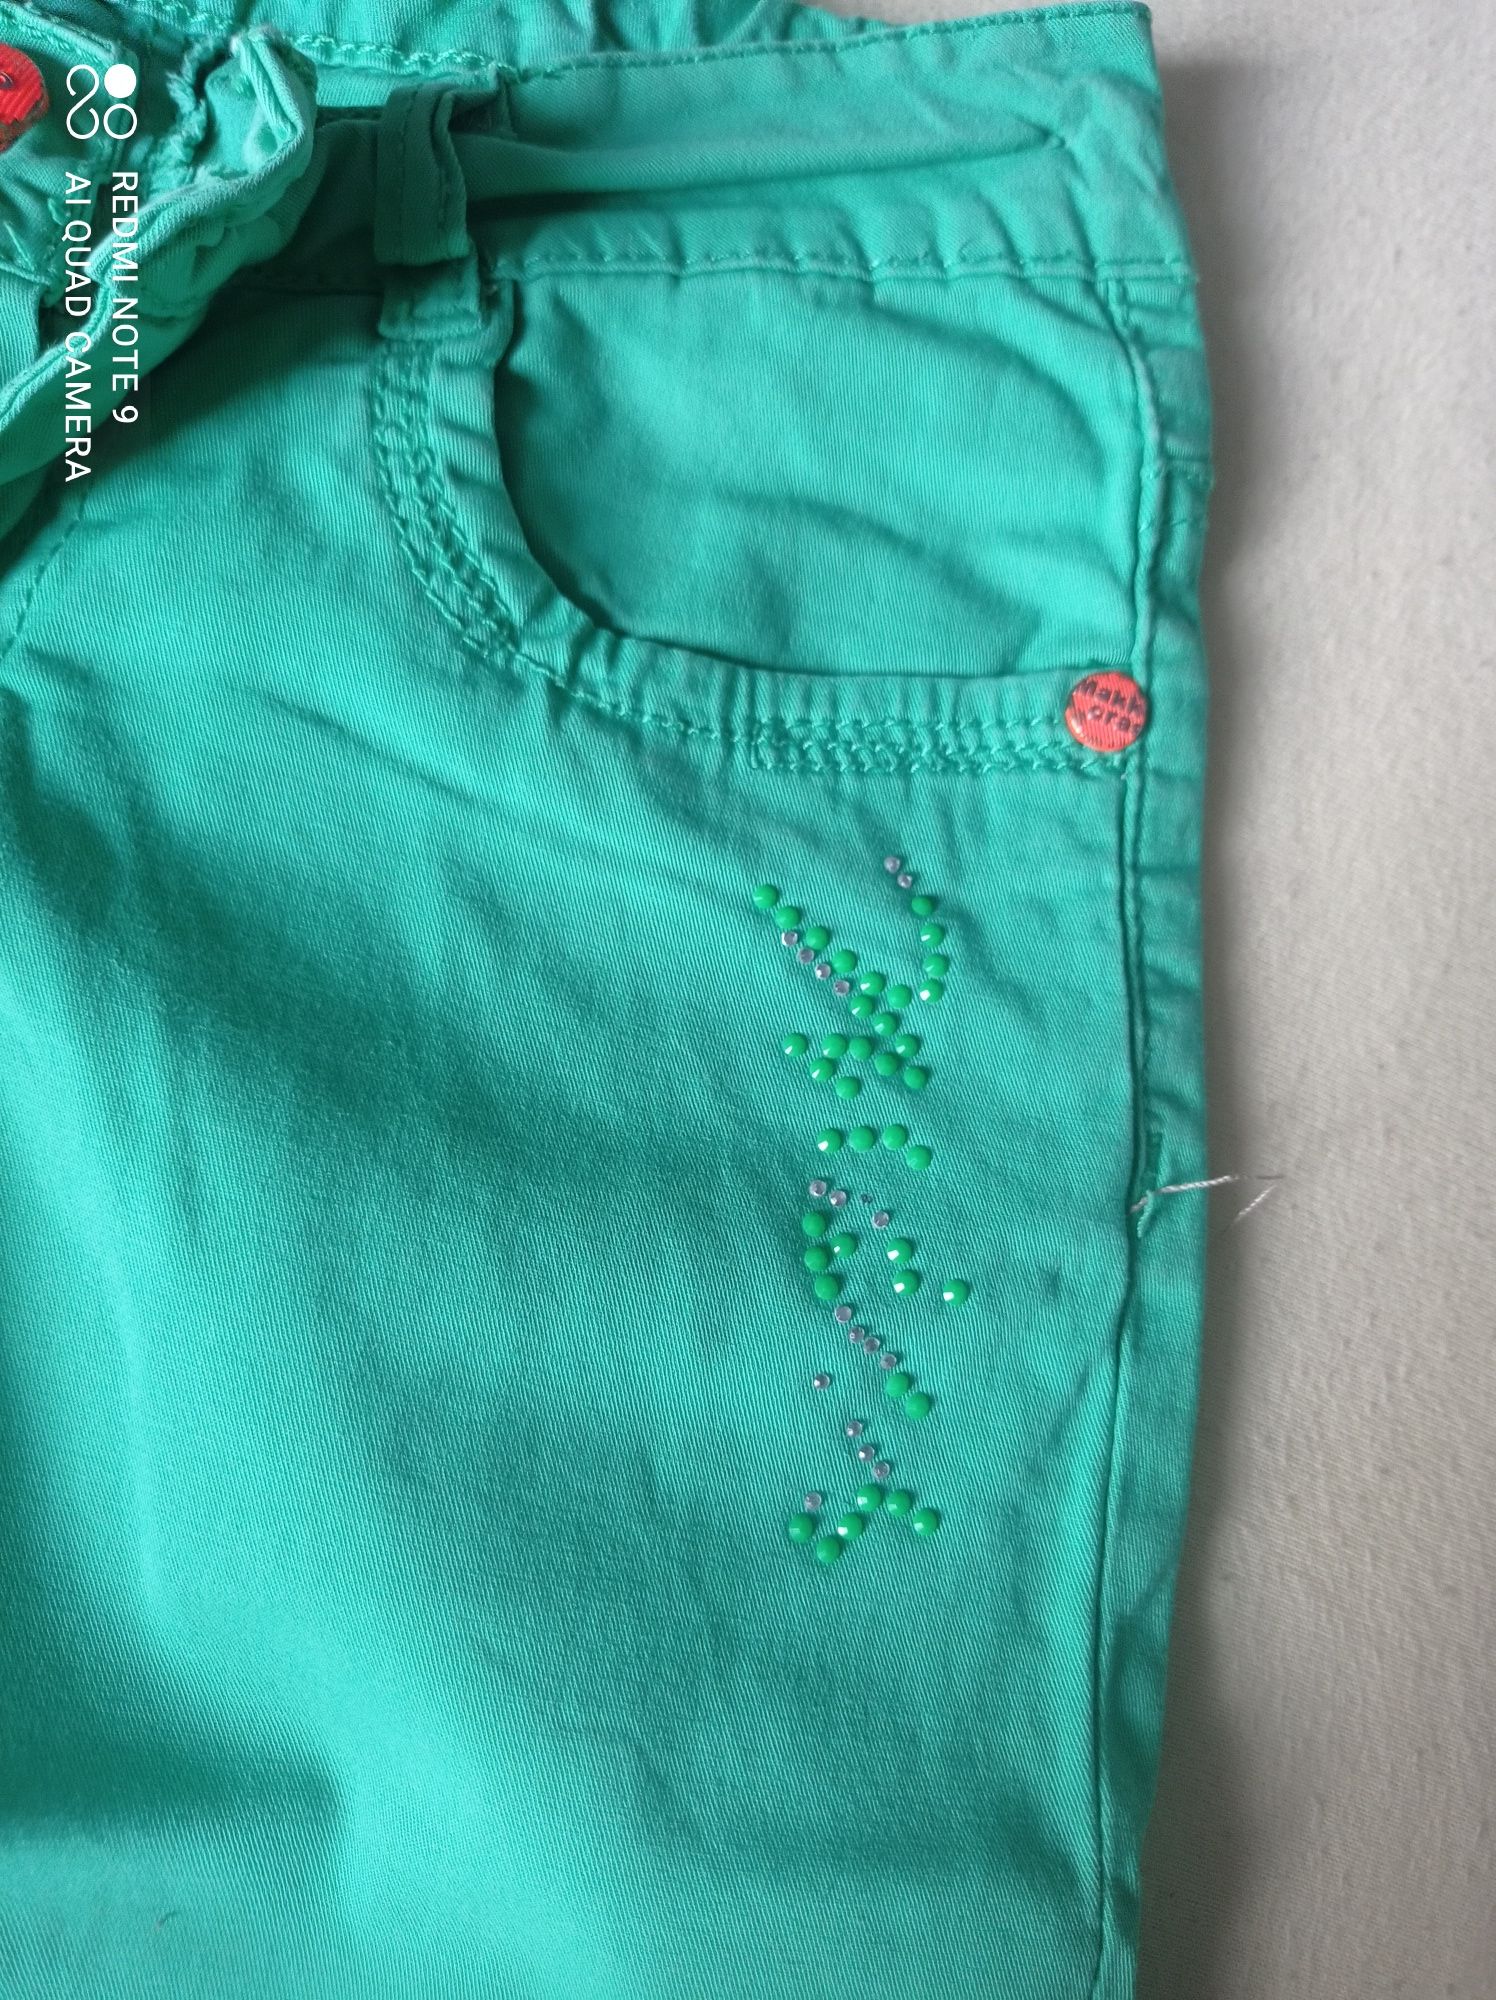 Jeansowe rybaczki dla dziewczynki w kolorze zielonym